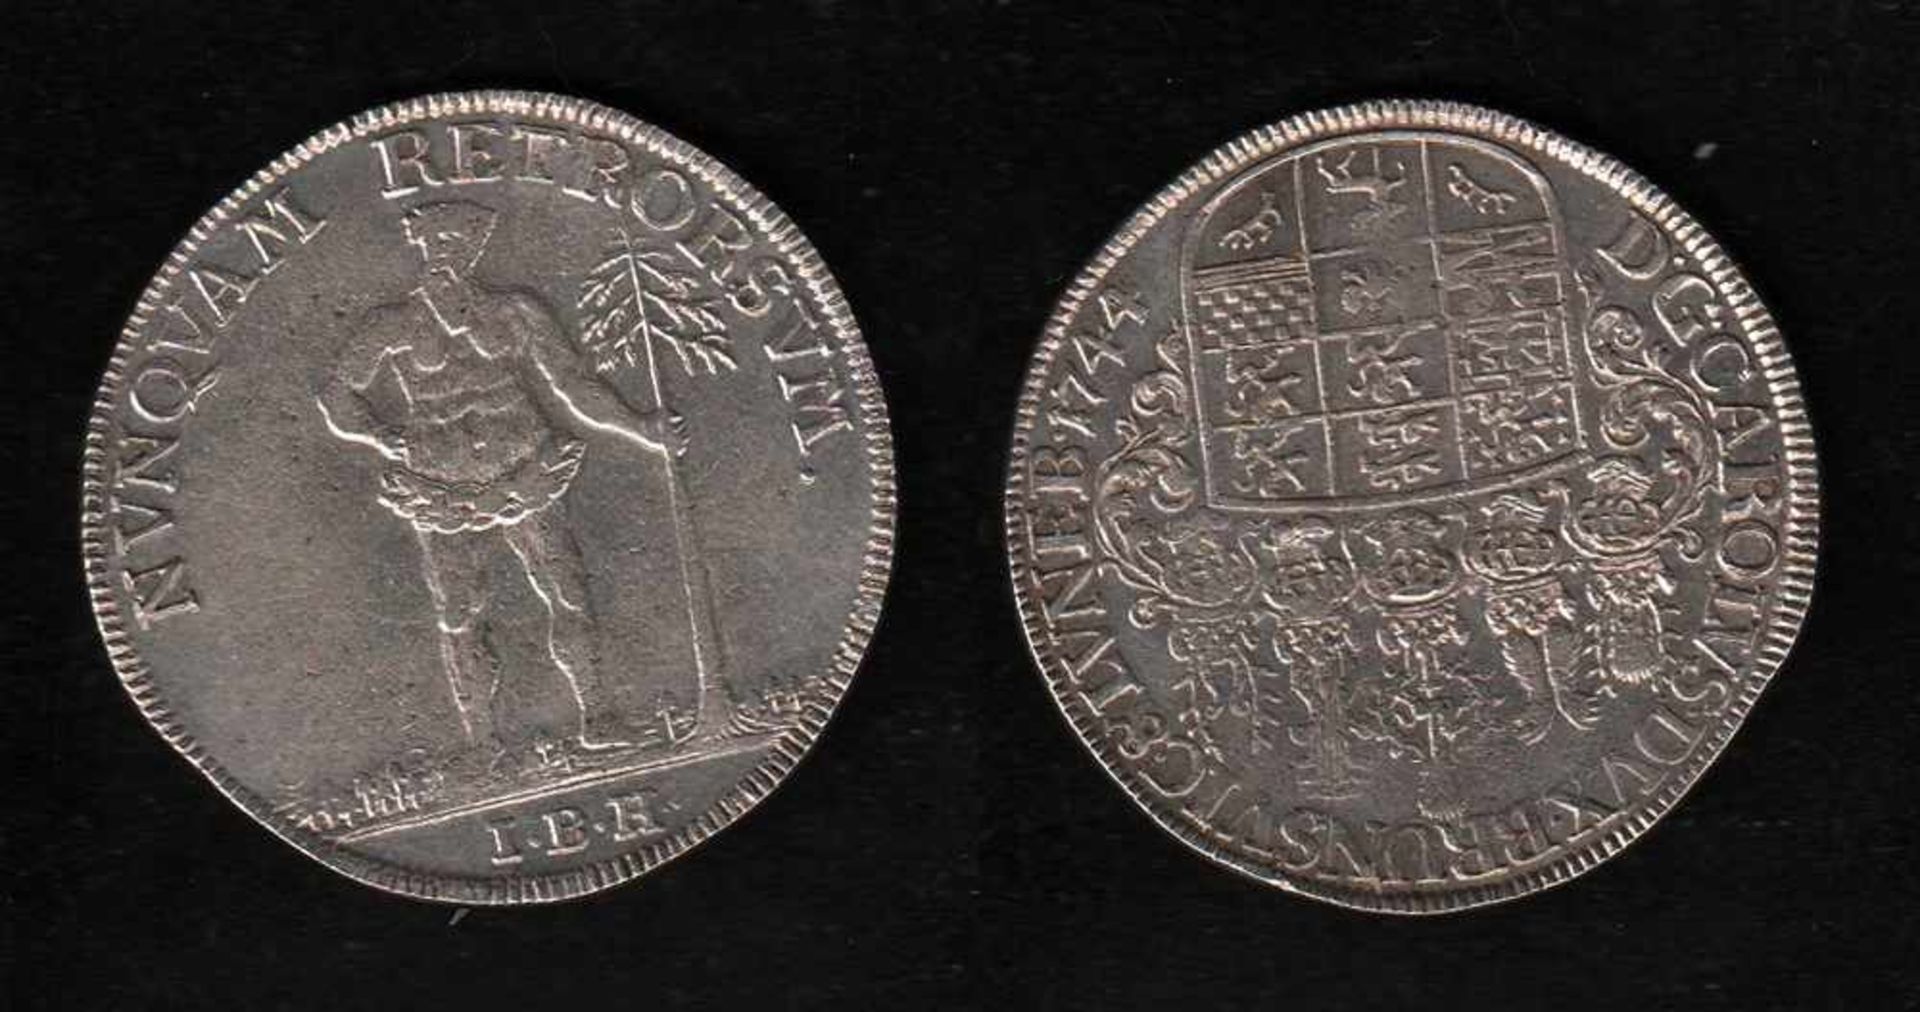 # Braunschweig. Silbermünze. 1 Taler. Karl I., Herzog zu Braunschweig - Lüneburg. 1744. Vorderseite: